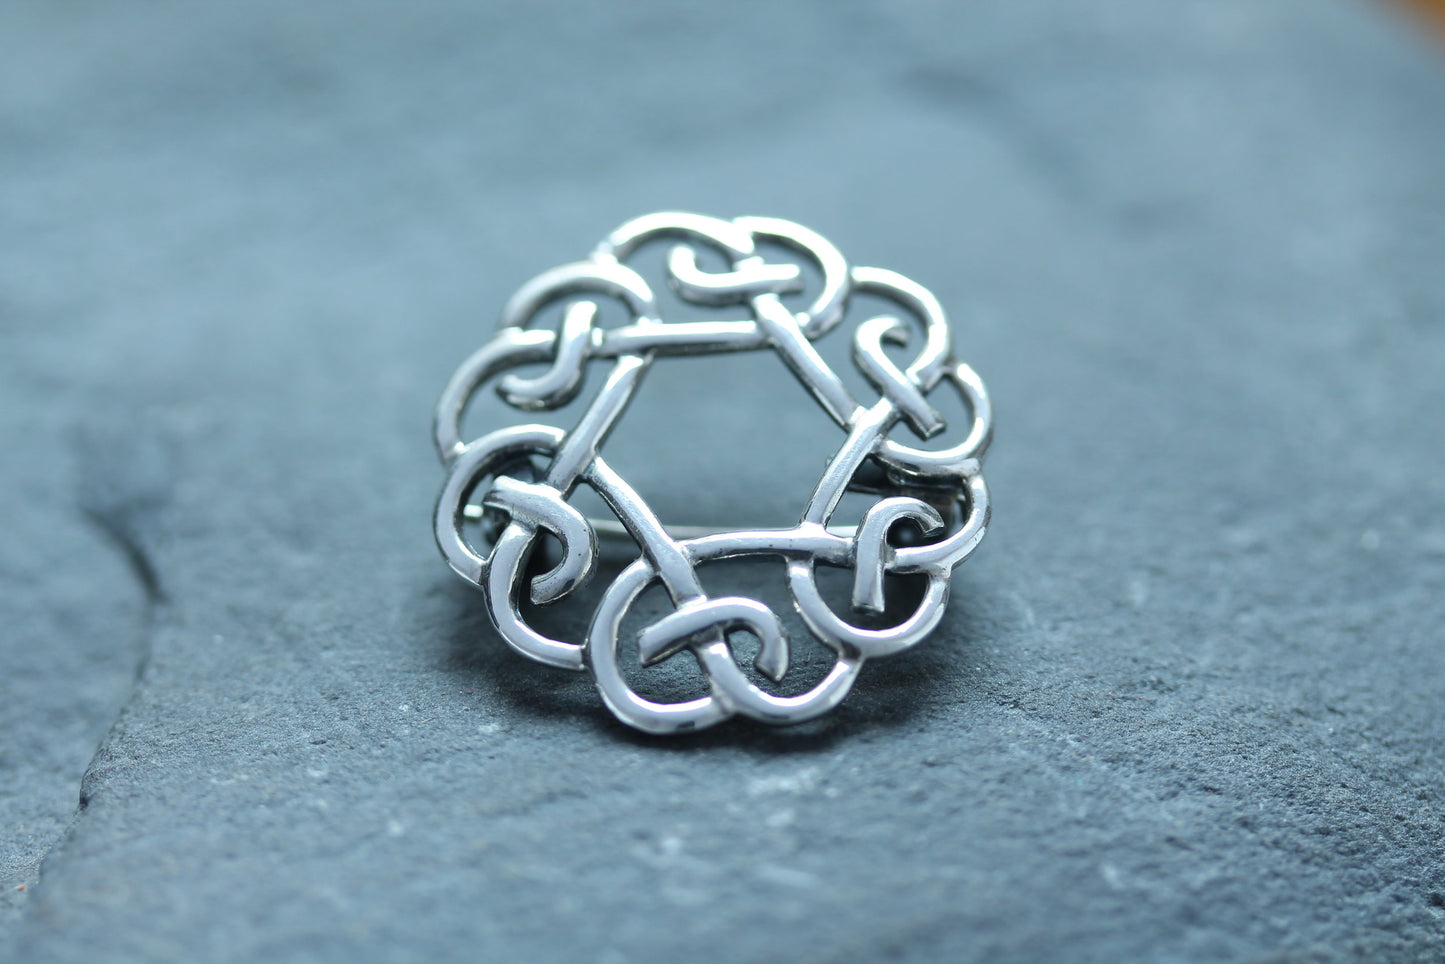 Celtic Knot Brooch - Circular Knot